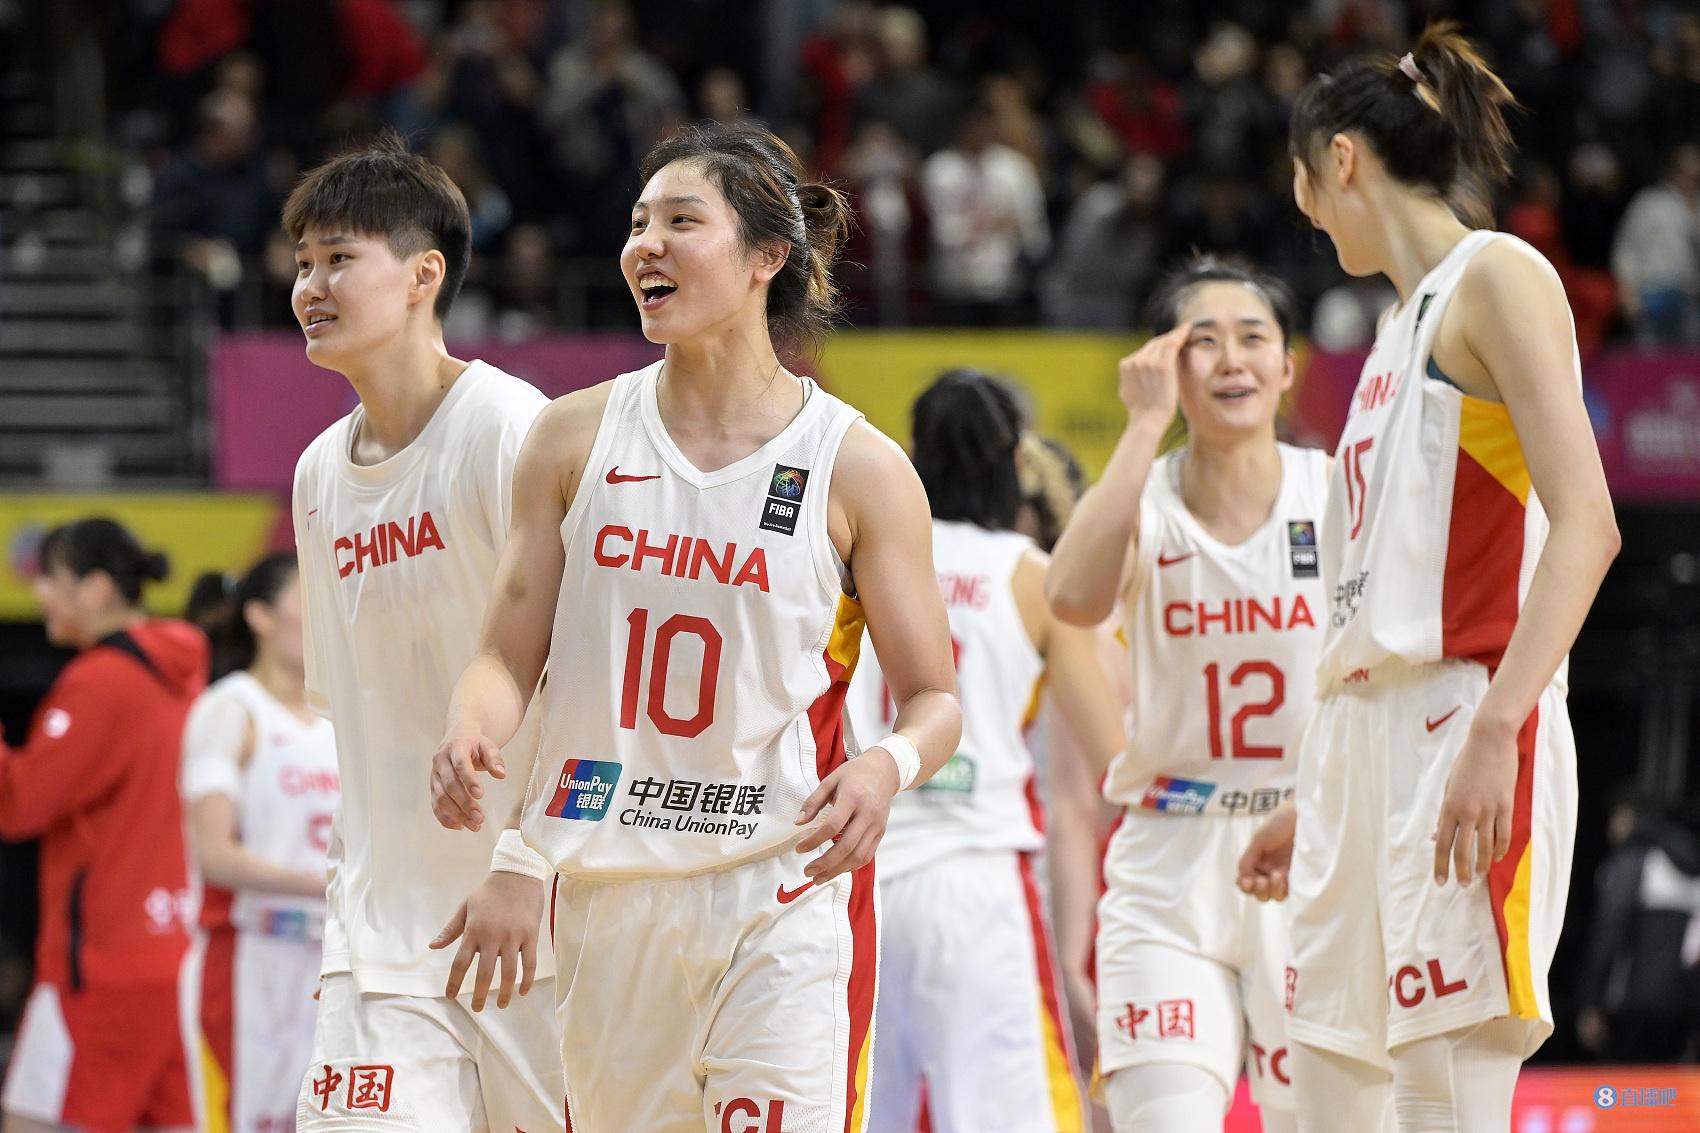 中国女篮亚运会主要对手为日韩 前者全主力出战&世界排名第9